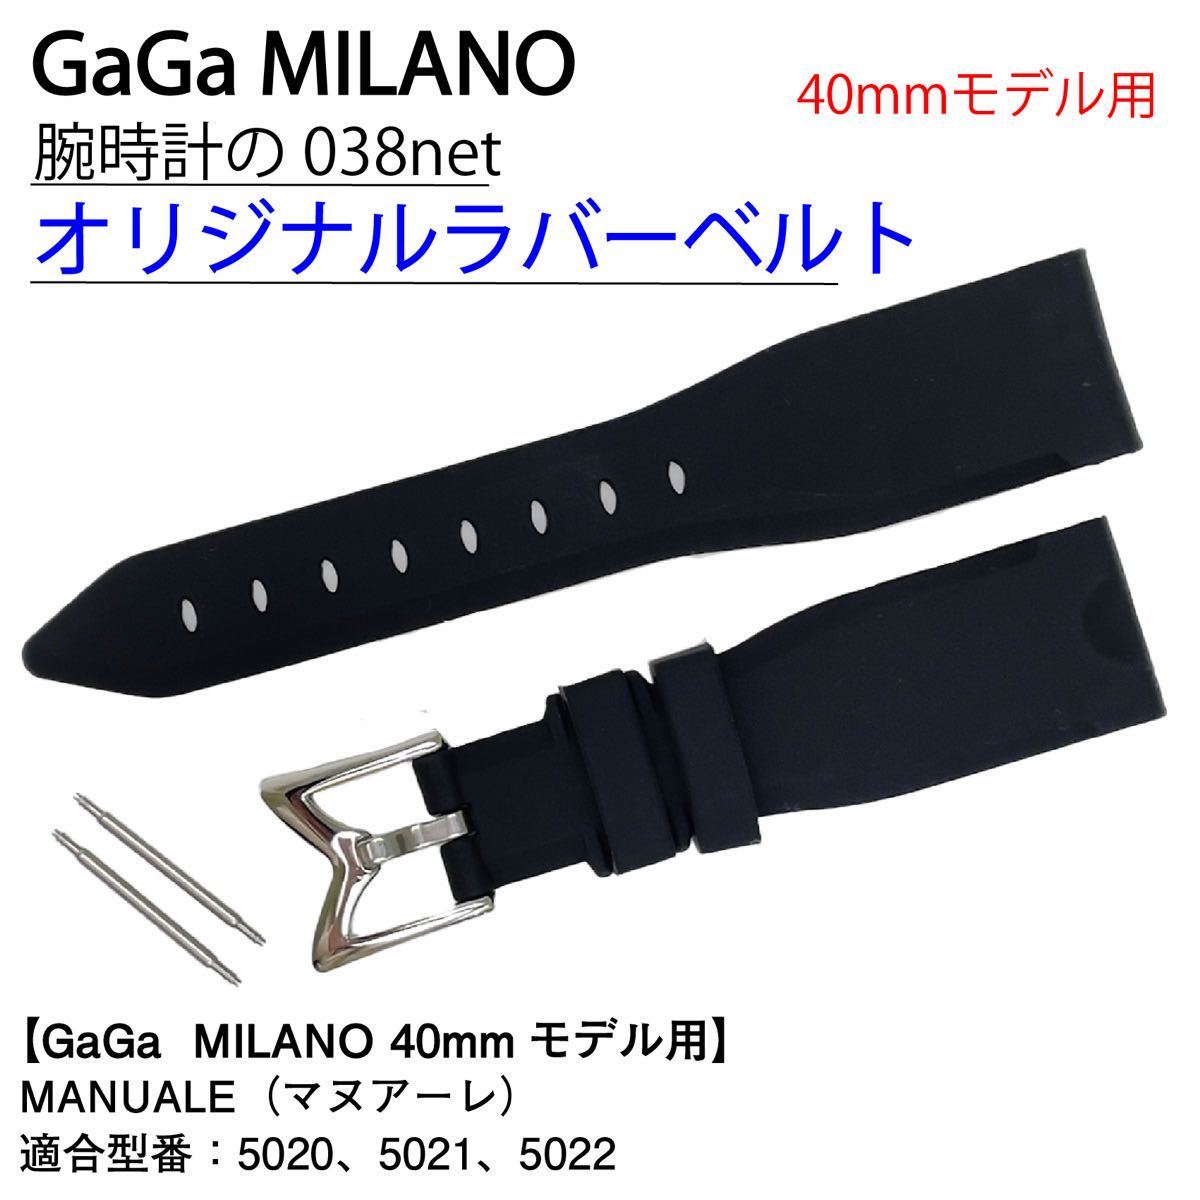 GaGa MILANO GaGa Milano 40mm модель соответствует резиновая лента черный чёрный MANUALEmana-re20mm ширина 20 мм 5020 5021 5022 boys женский 